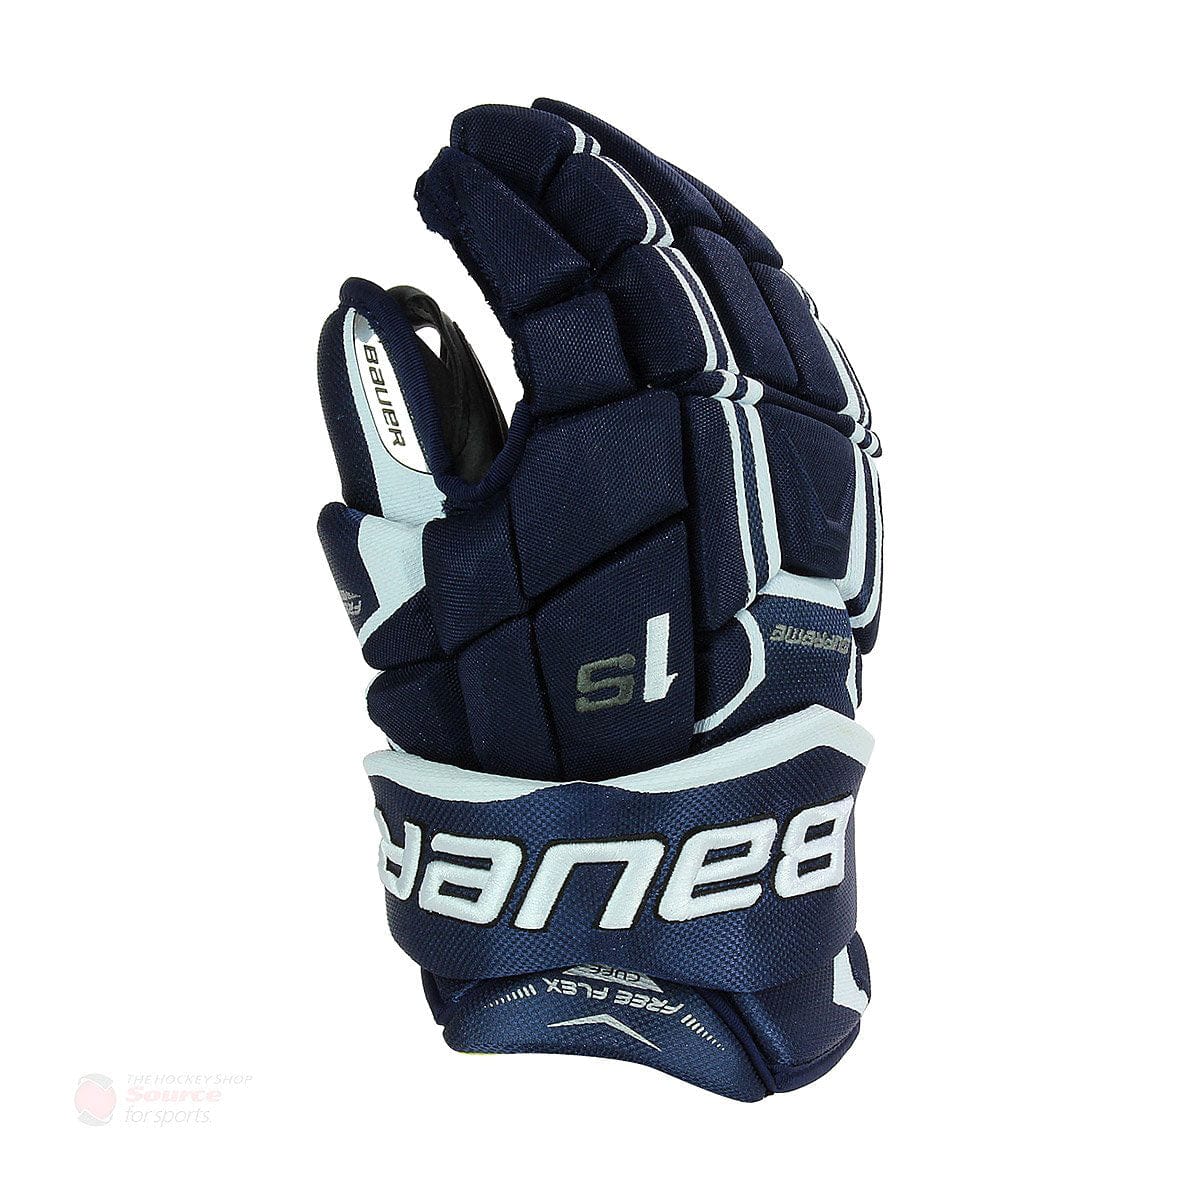 Bauer Supreme 1S Junior Hockey Gloves